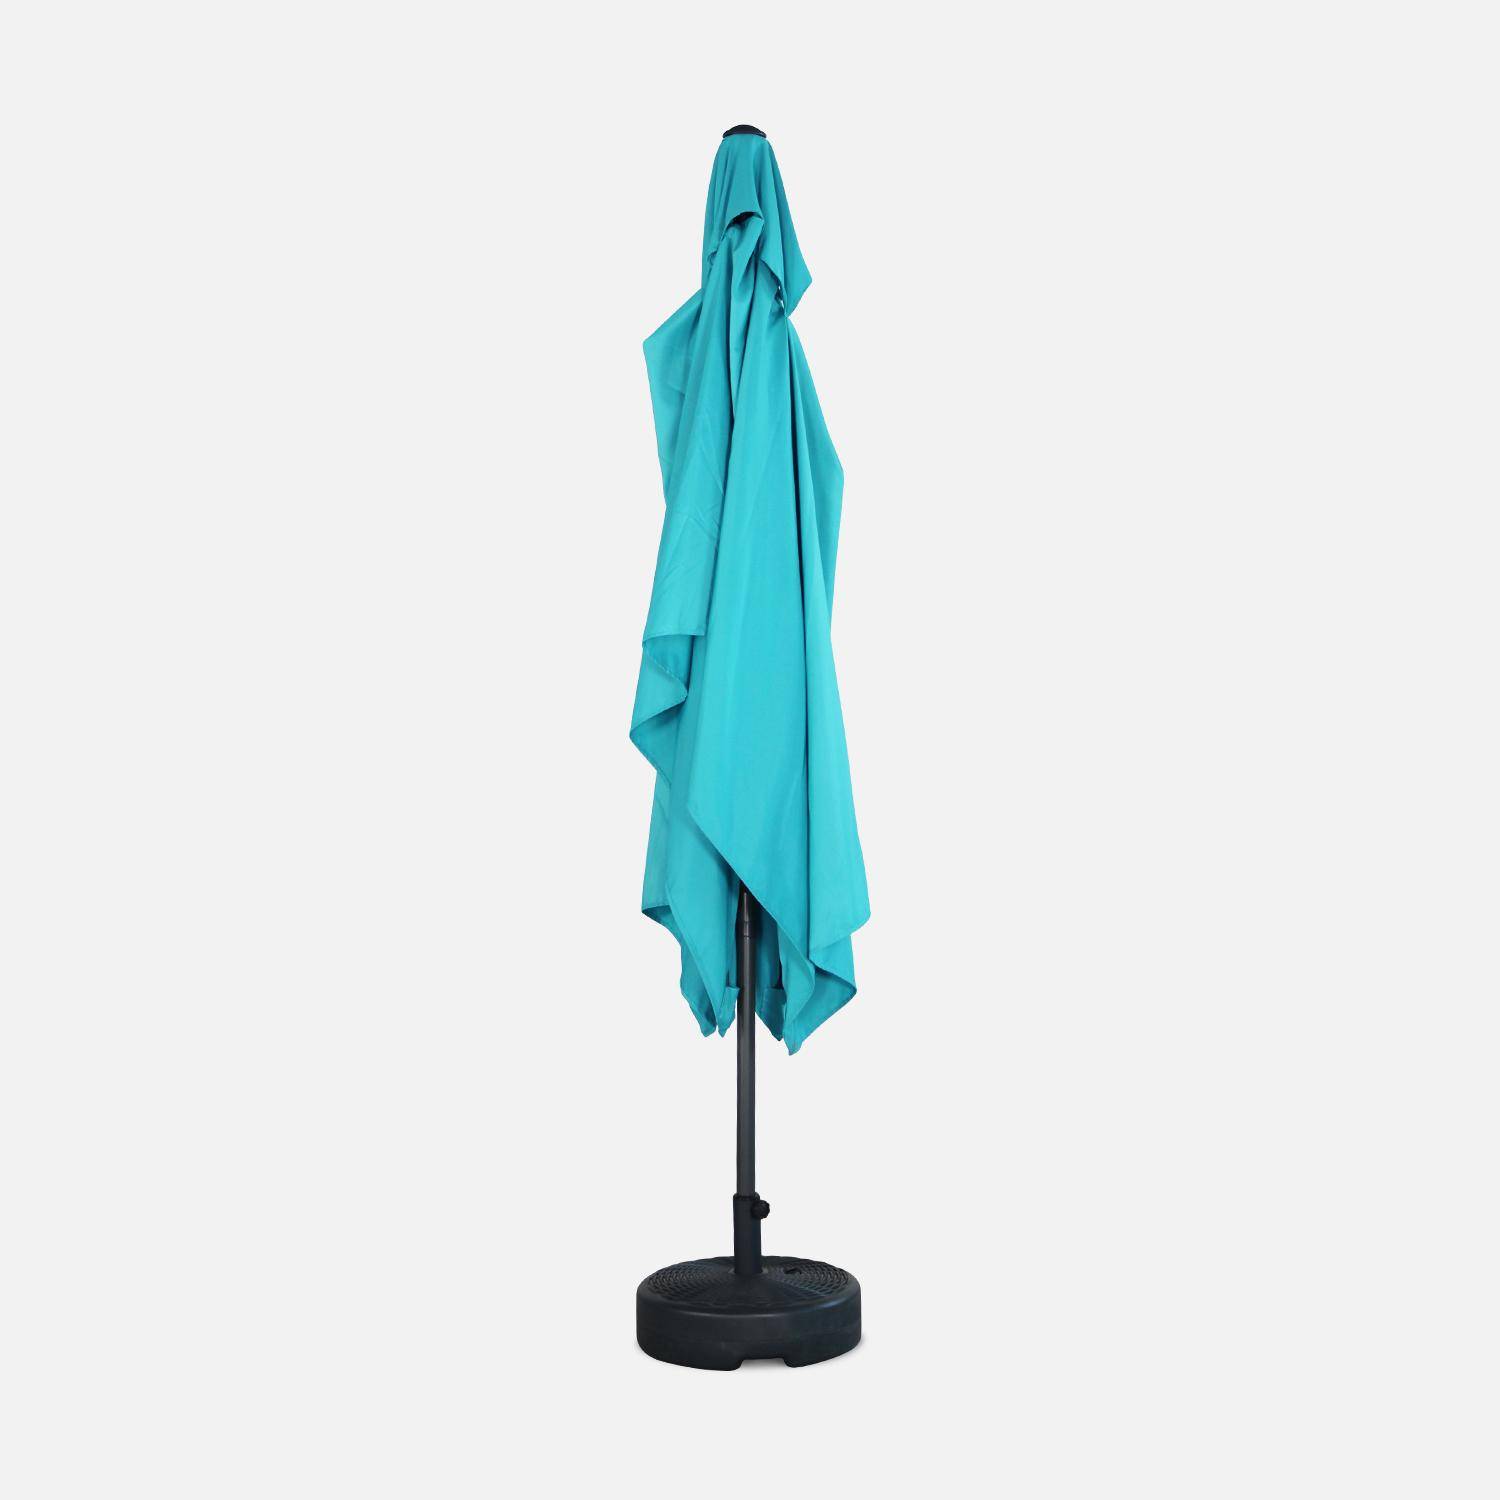 Parasol droit rectangulaire 2x3m - Touquet Turquoise - mât central en aluminium orientable et manivelle d'ouverture,sweeek,Photo4